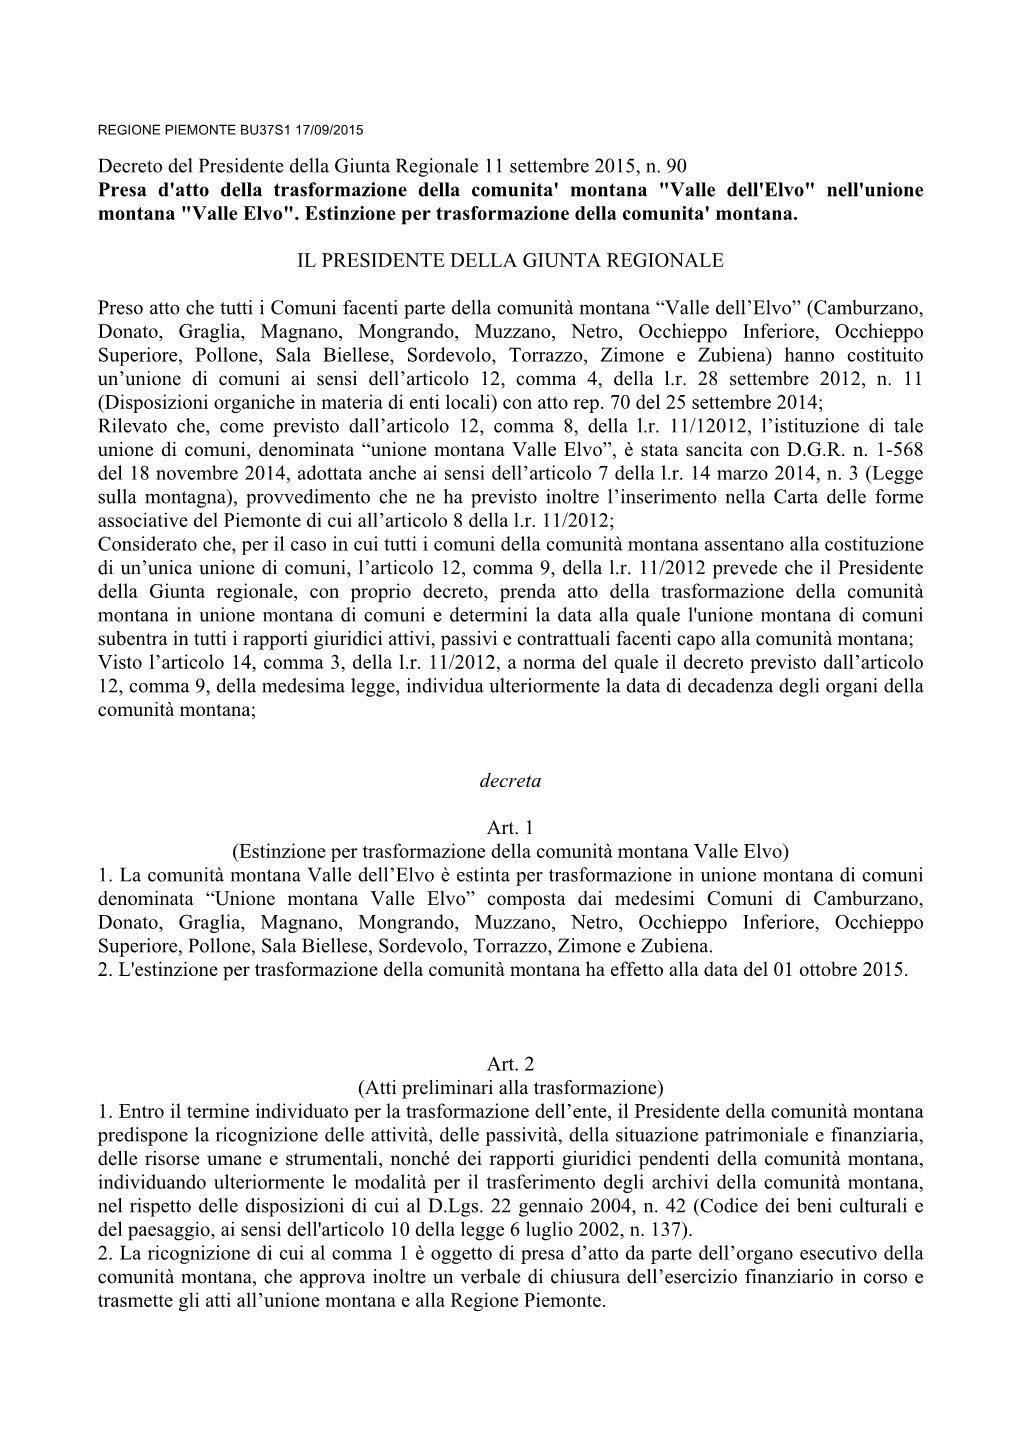 Decreto Del Presidente Della Giunta Regionale 11 Settembre 2015, N. 90